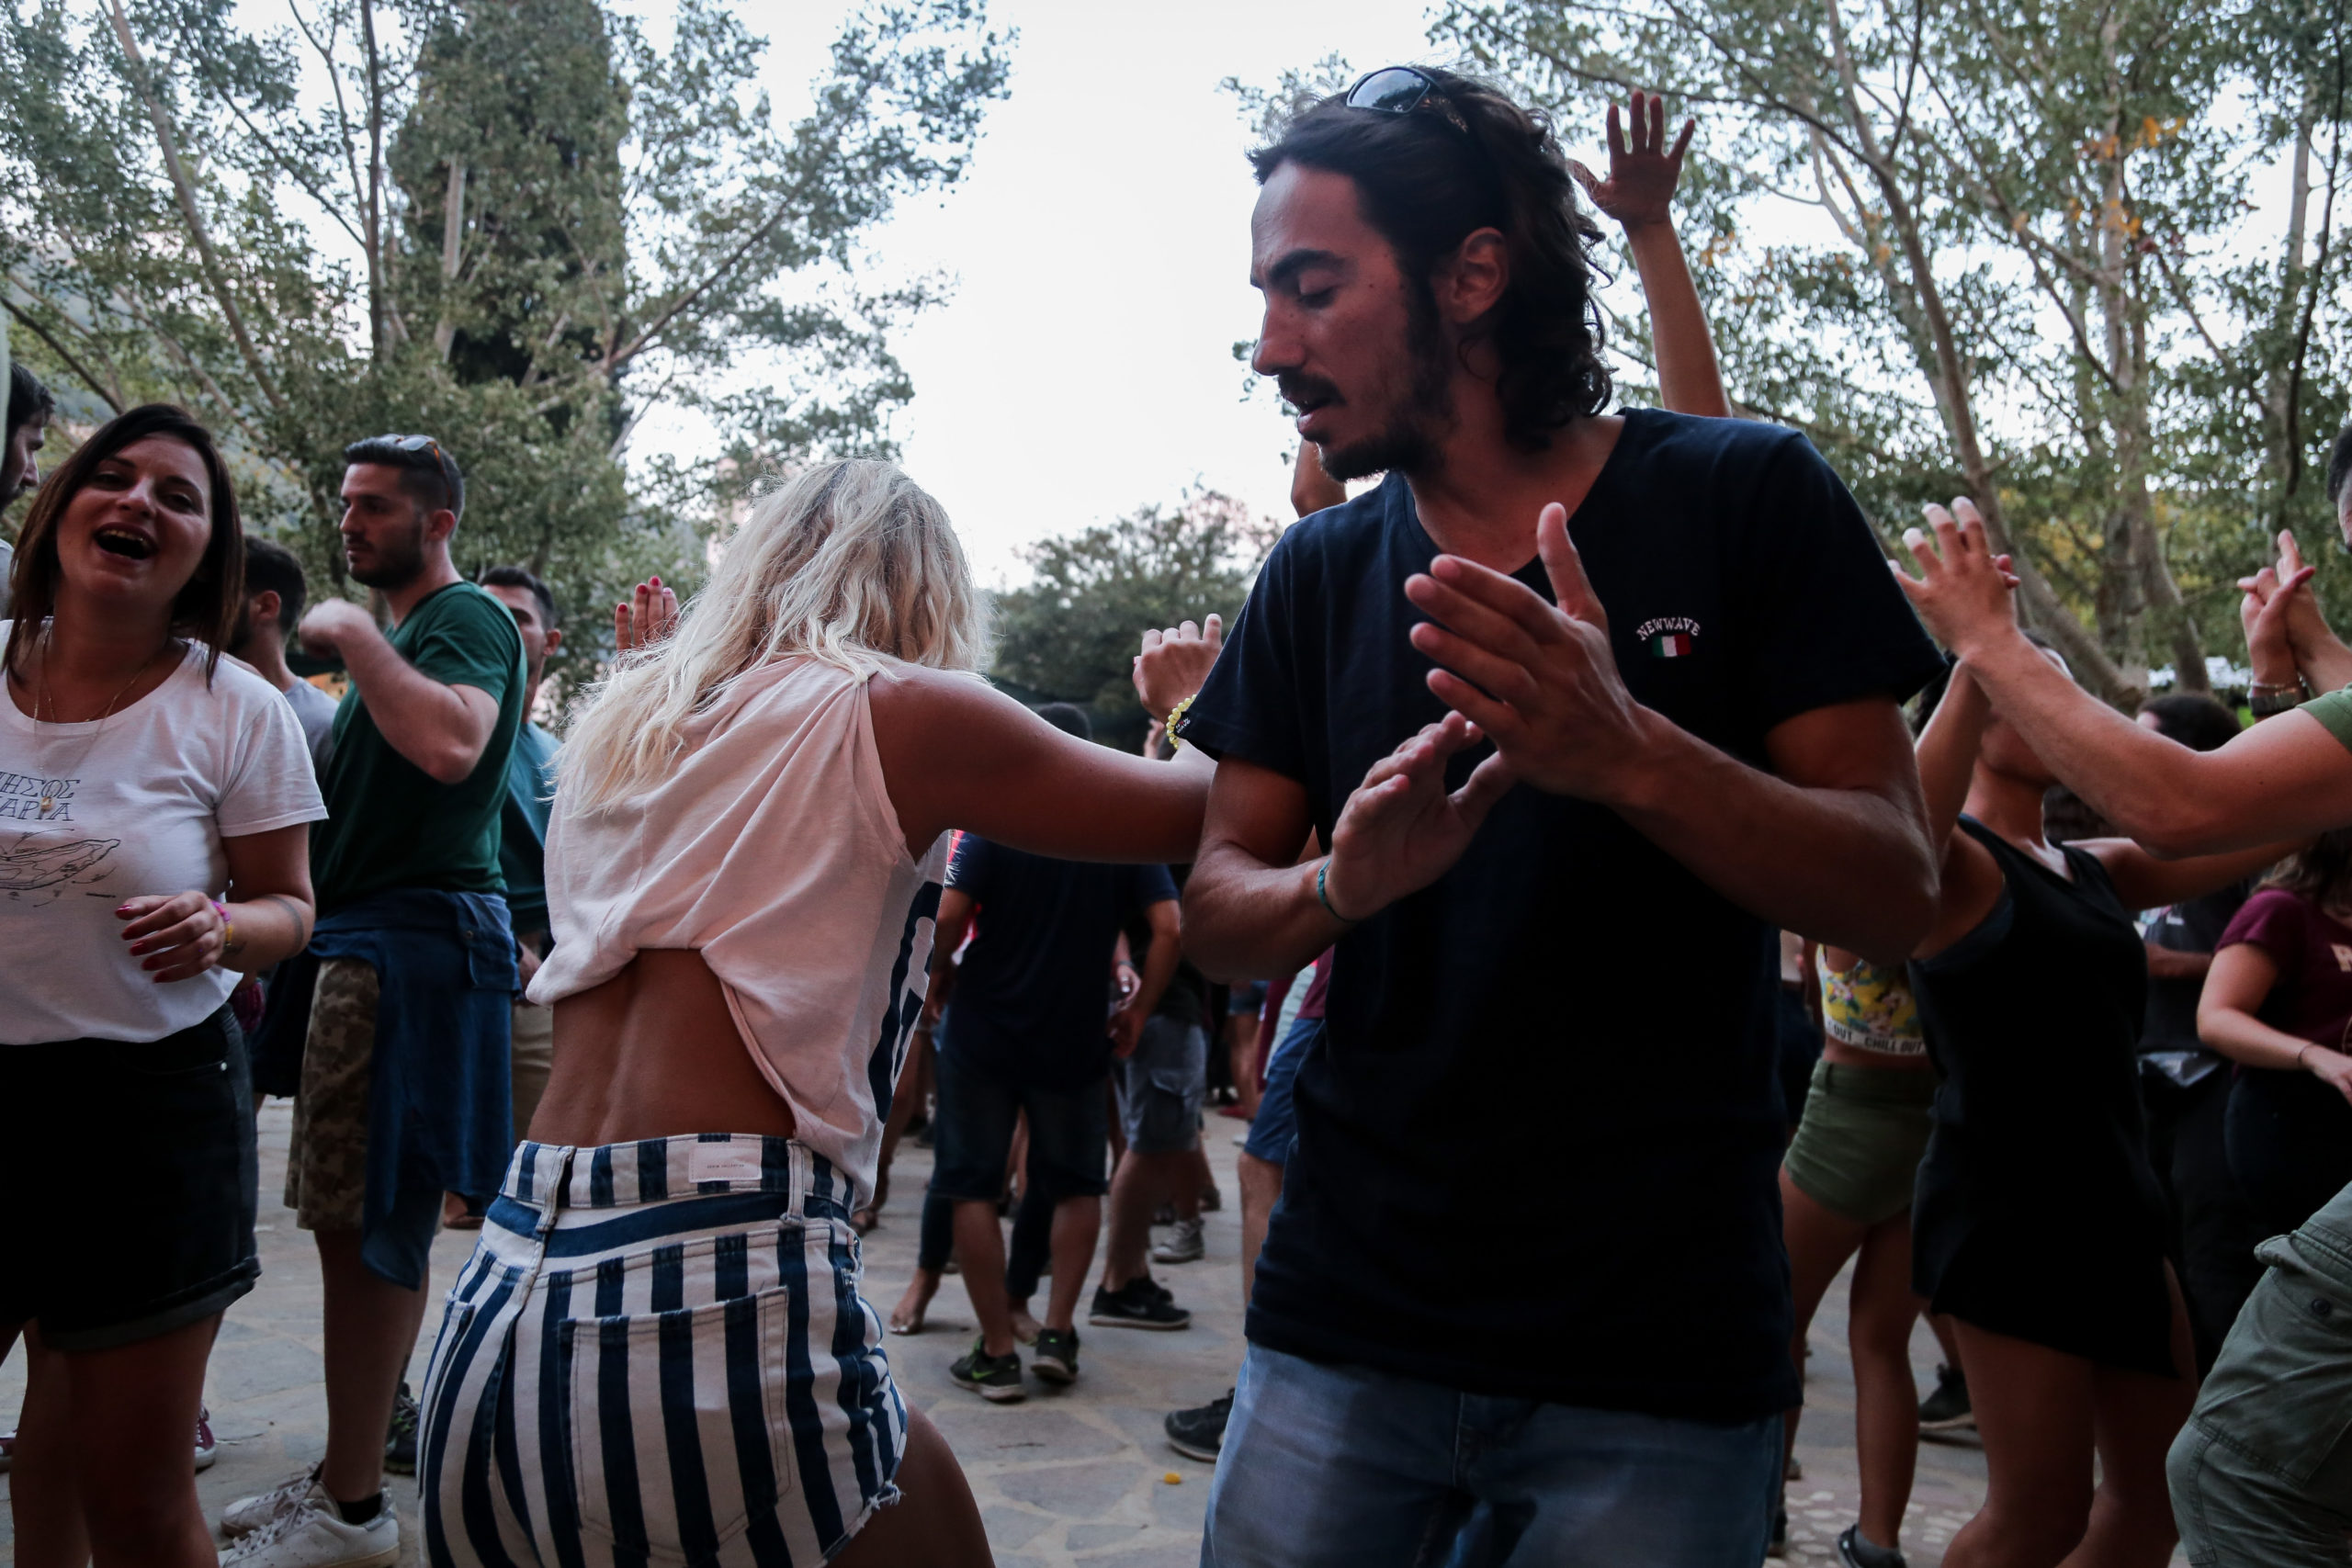 Πανηγύρια ανά την Ελλάδα: Με καβουρμά και άλλα τοπικά εδέσματα γιορτάζουν στο Σταυροσκιάδι Ηπείρου (video)